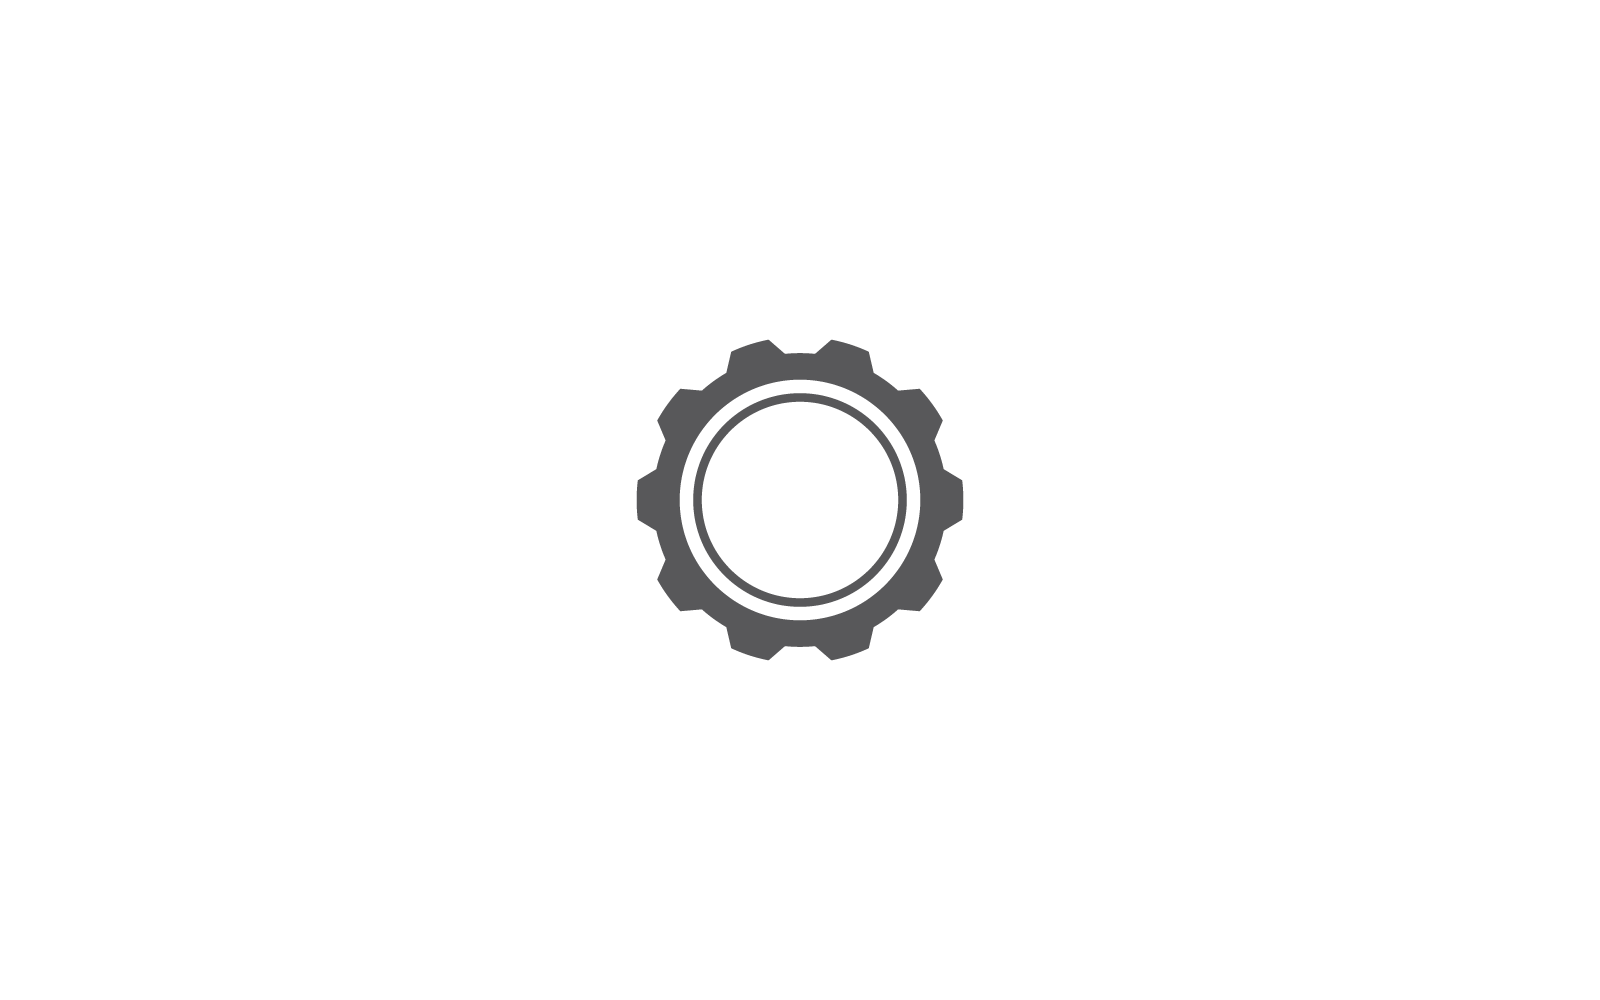 Gear logo icon template vector flat design